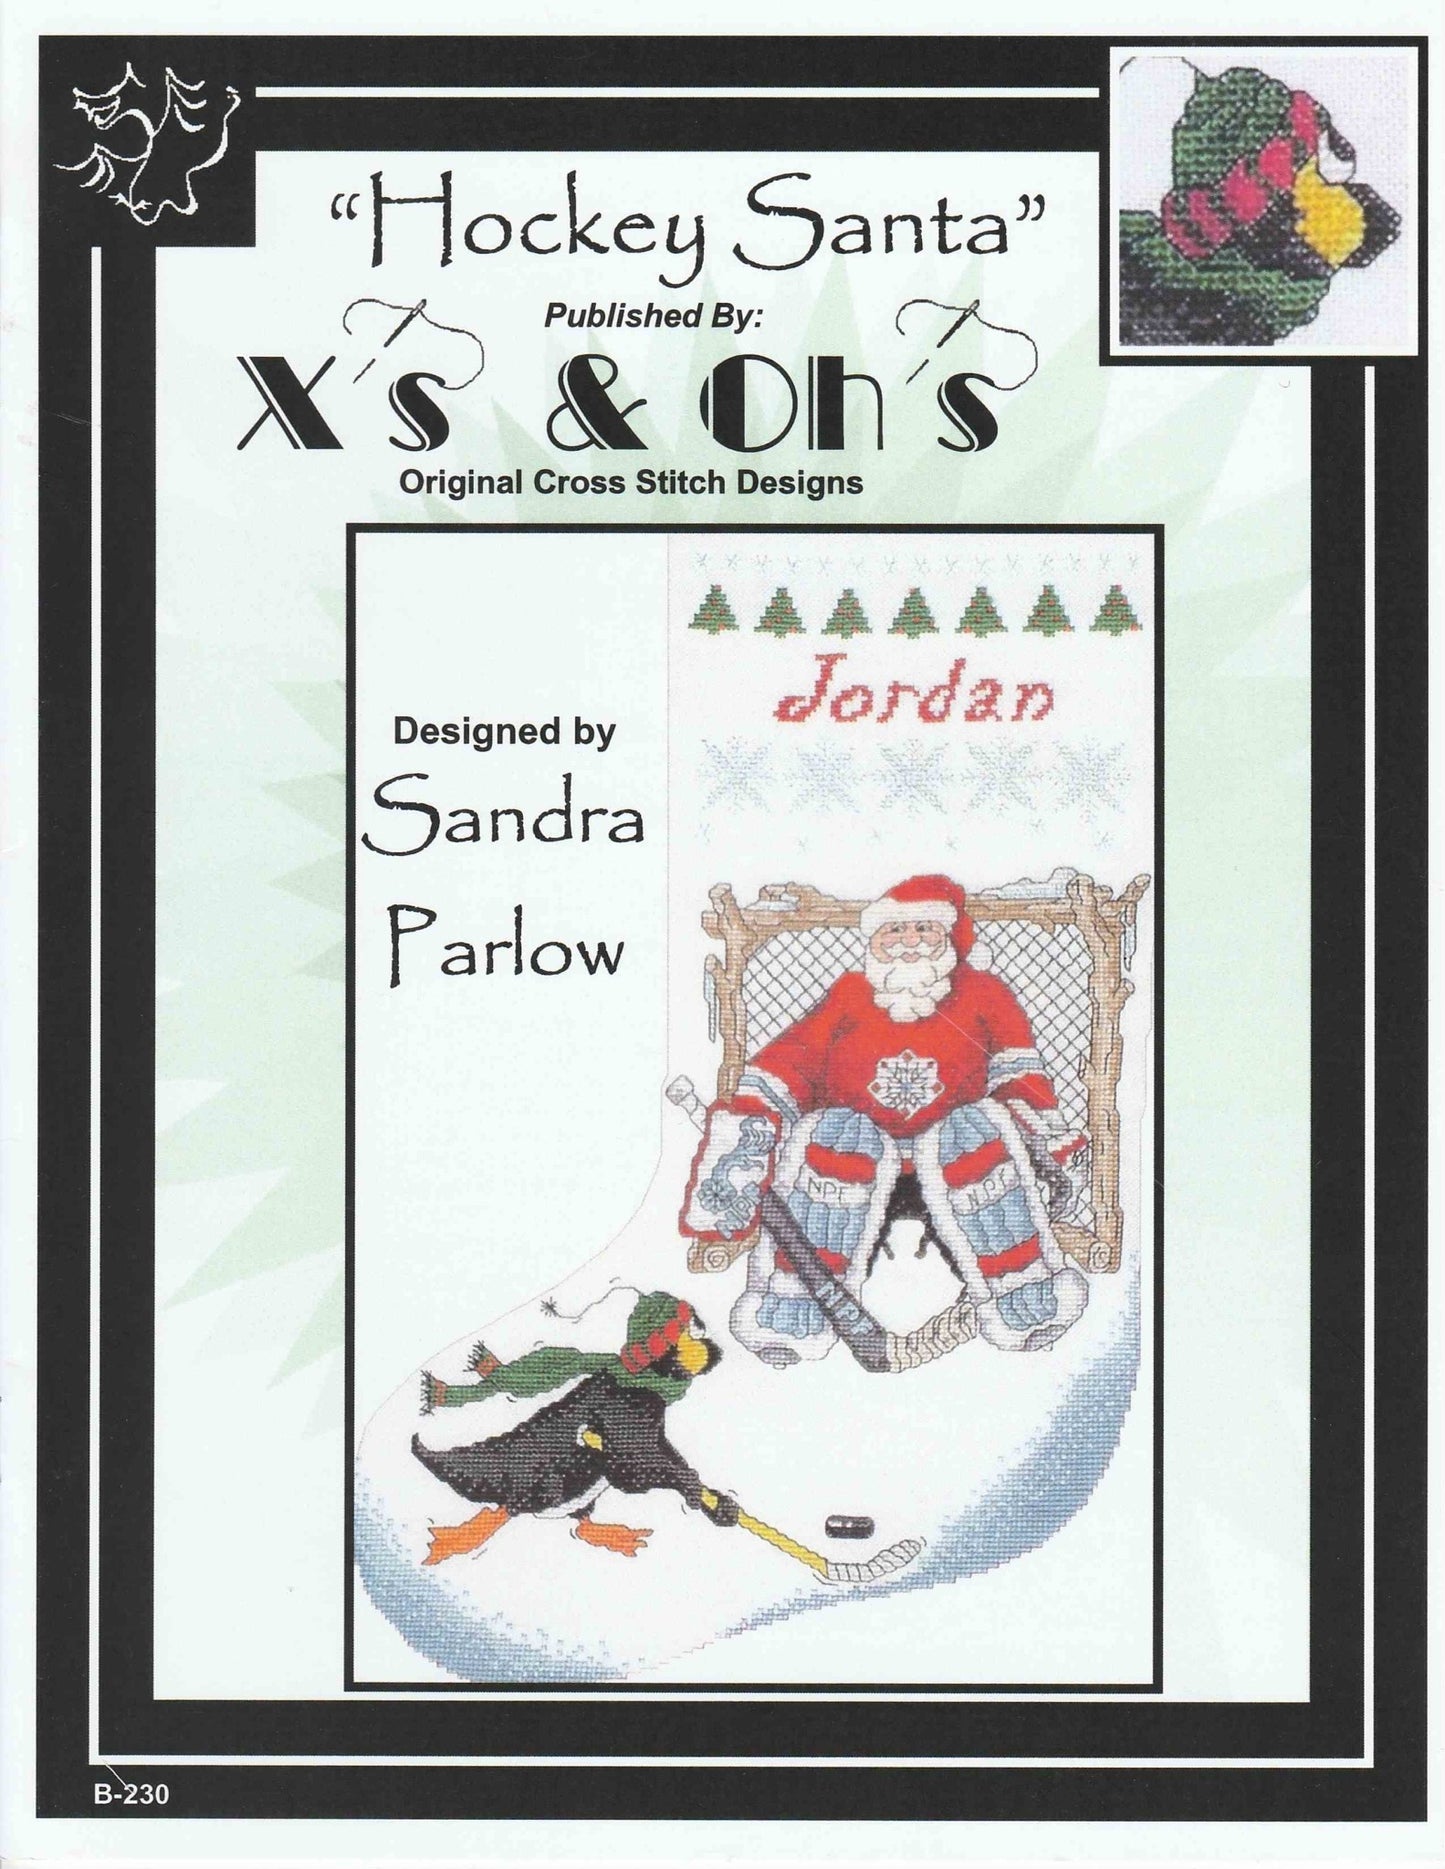 X's & Oh's Hockey Santa